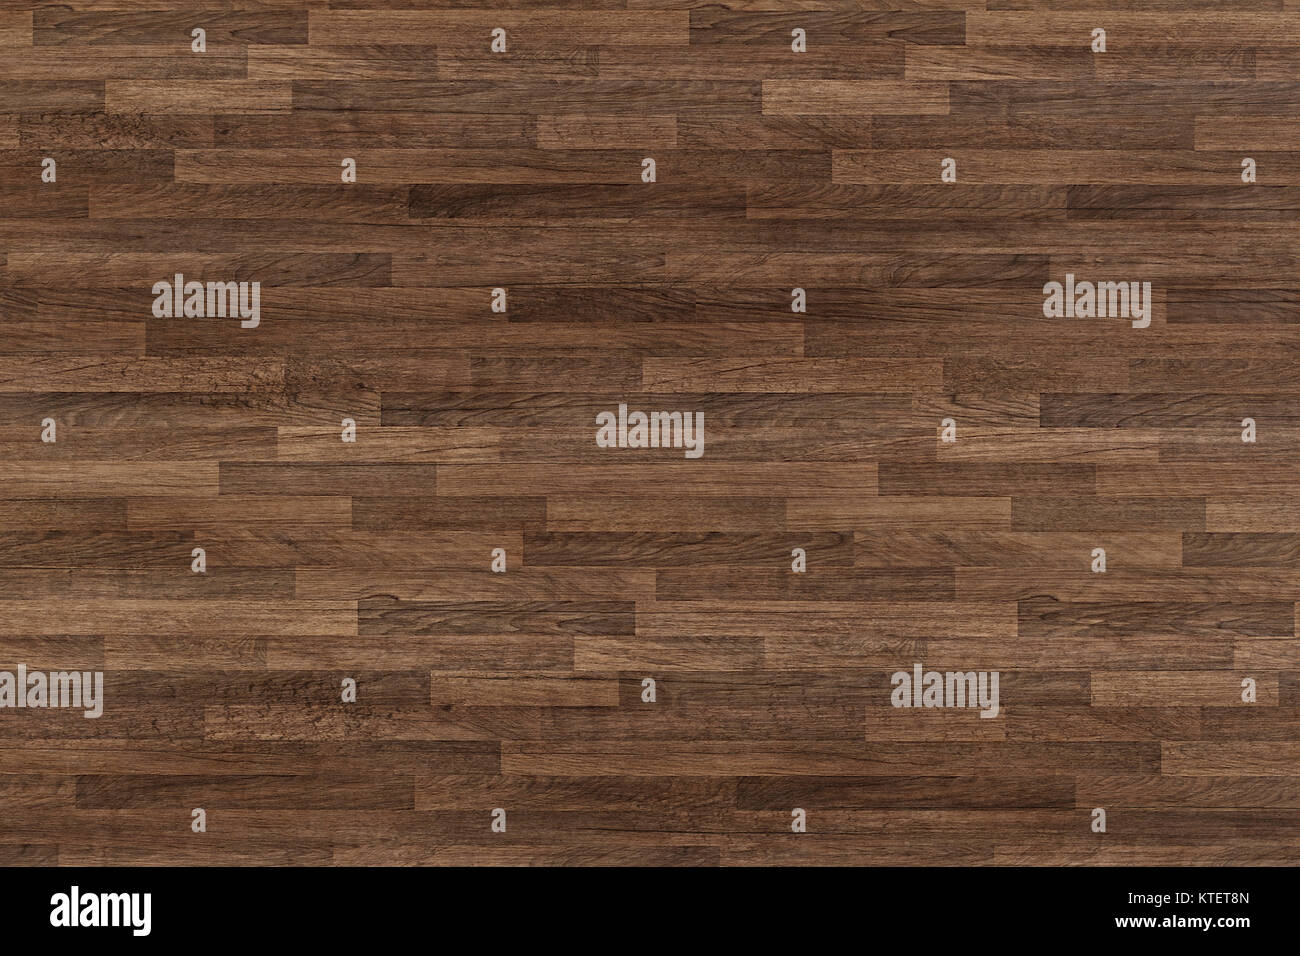 seamless wood floor texture, hardwood floor texture, wooden parquet Stock Photo